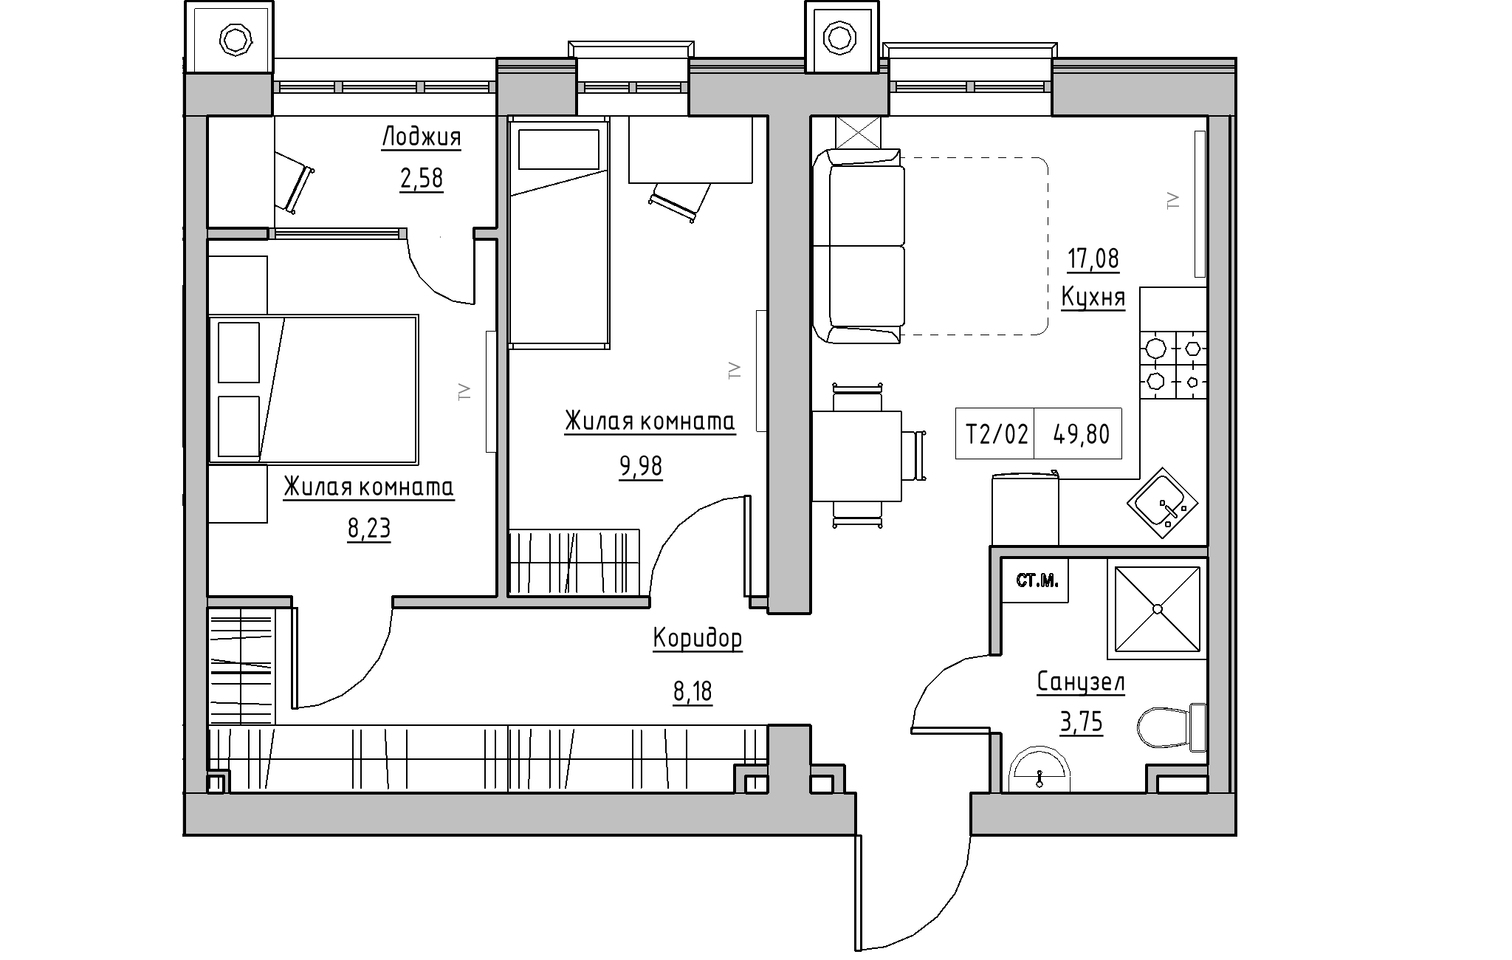 Планировка 2-к квартира площей 49.8м2, KS-010-01/0007.